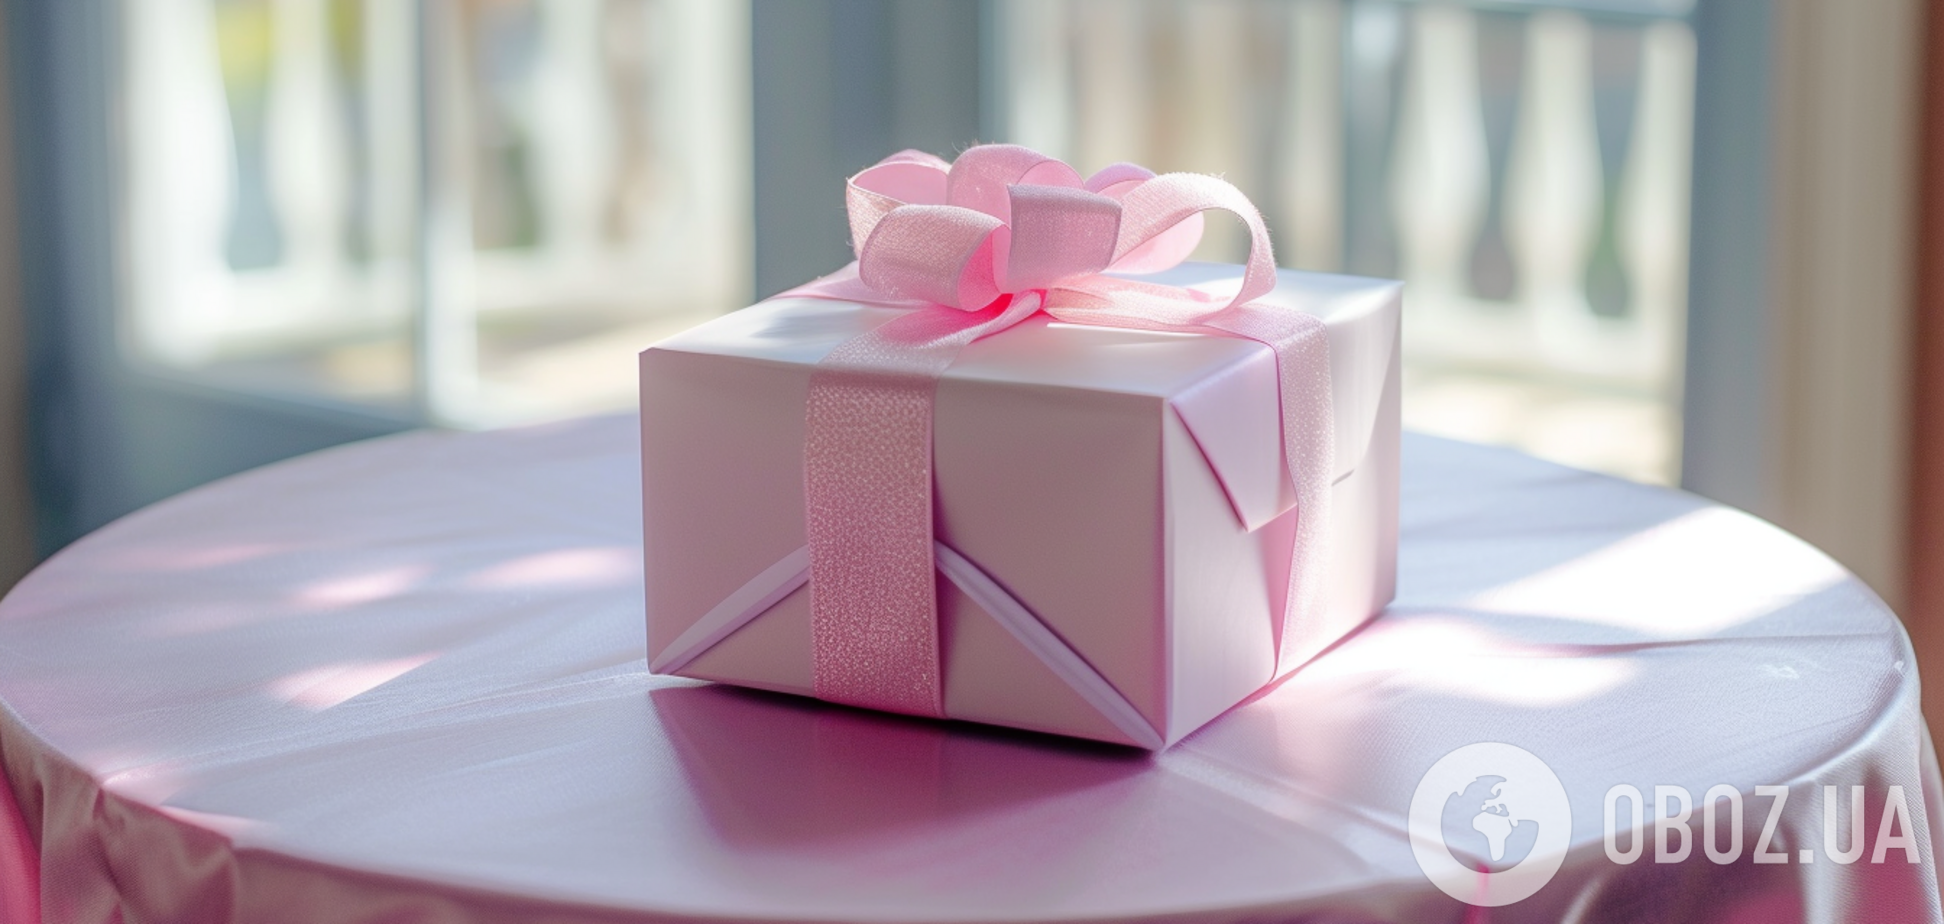 Народные приметы: какие подарки не стоит дарить никому на день рождения